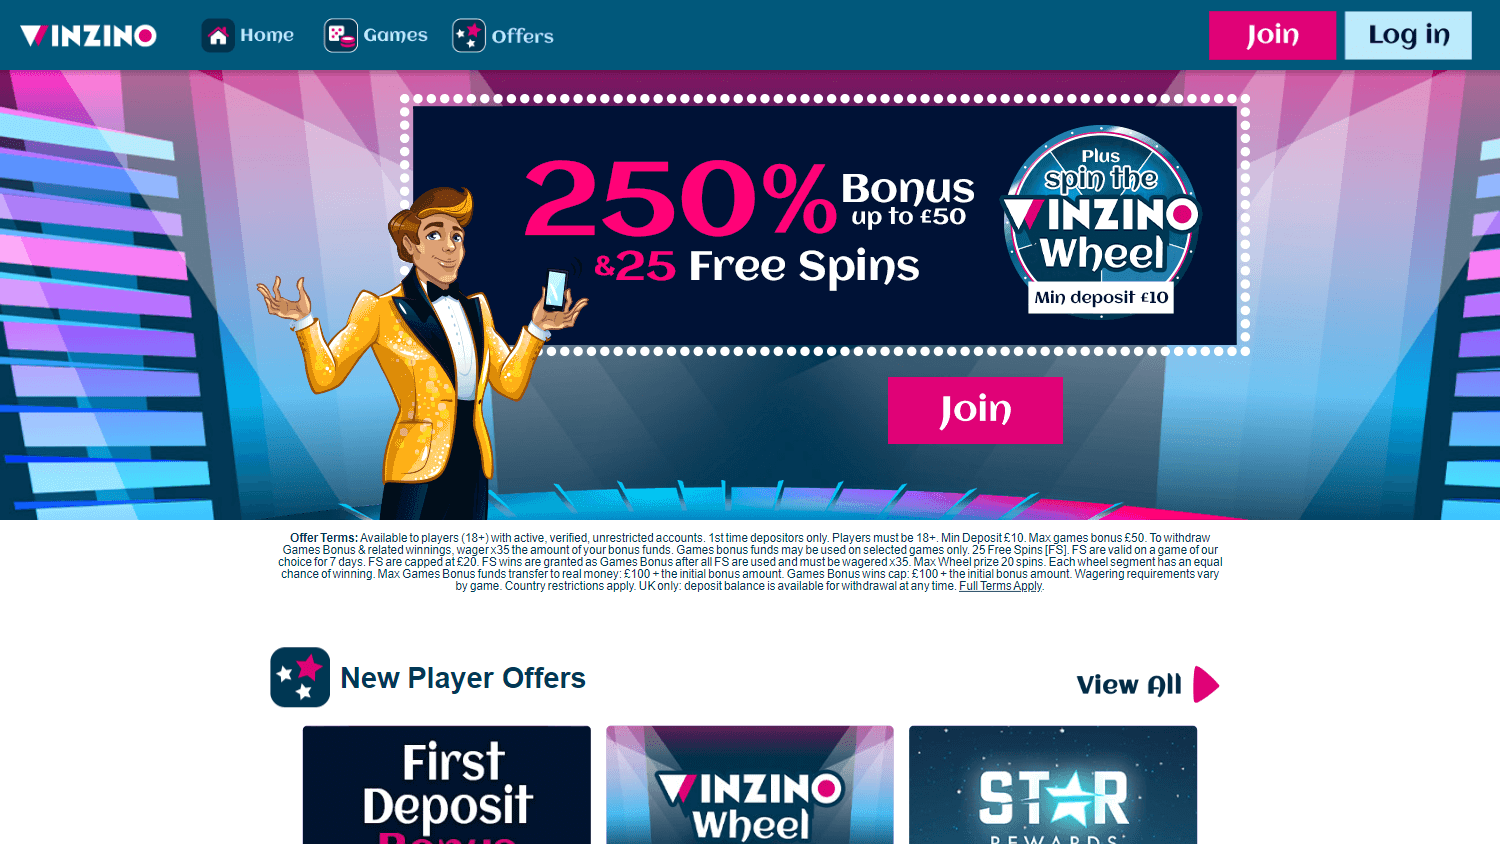 winzino_casino_homepage_desktop